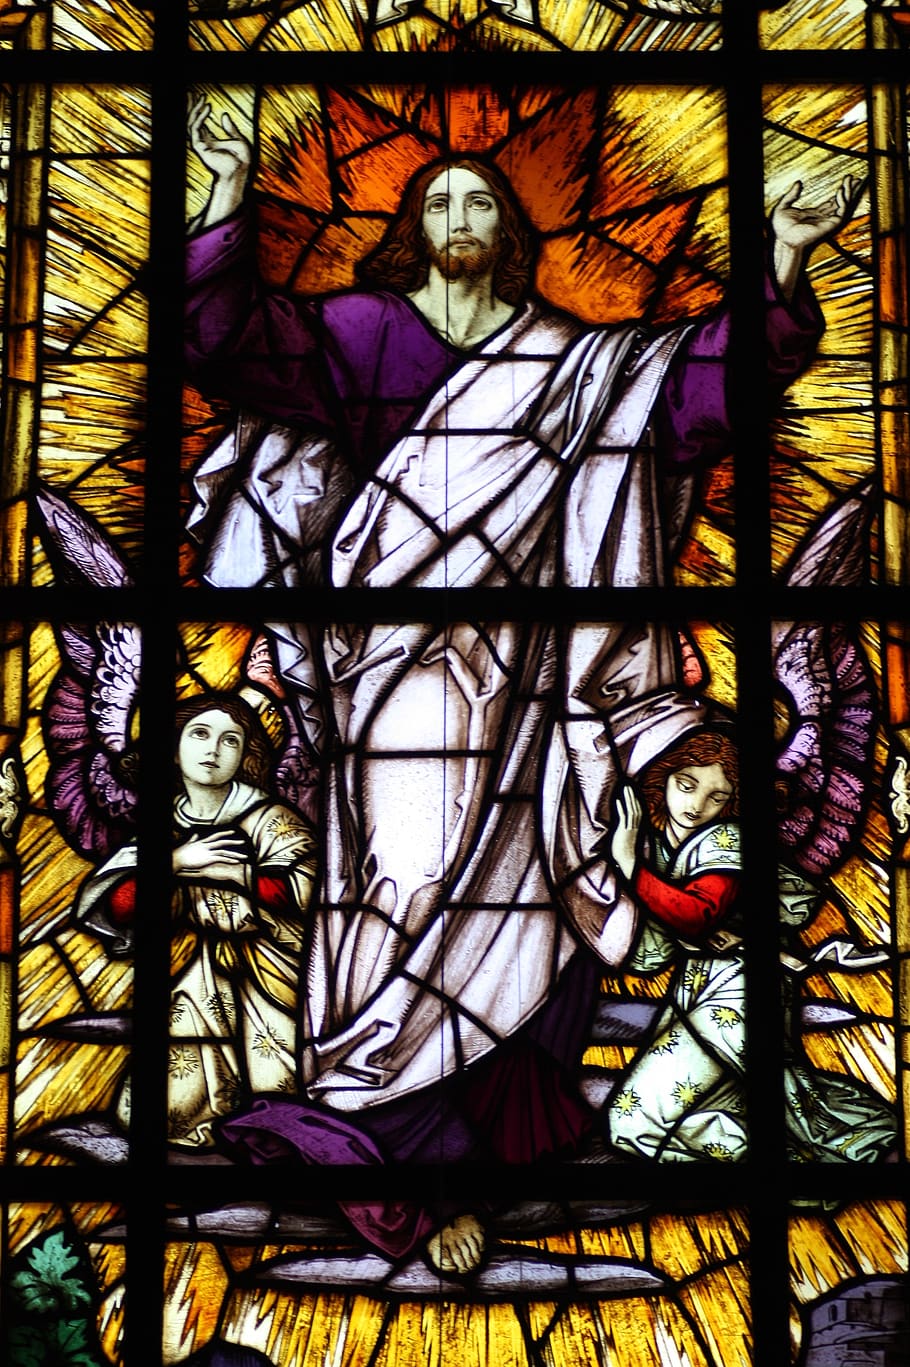 Yesus, kebangkitan, jendela gereja, Maria Rosenberg, Gereja, iman, jendela, kaca patri, Yesus Kristus, seni dan kerajinan